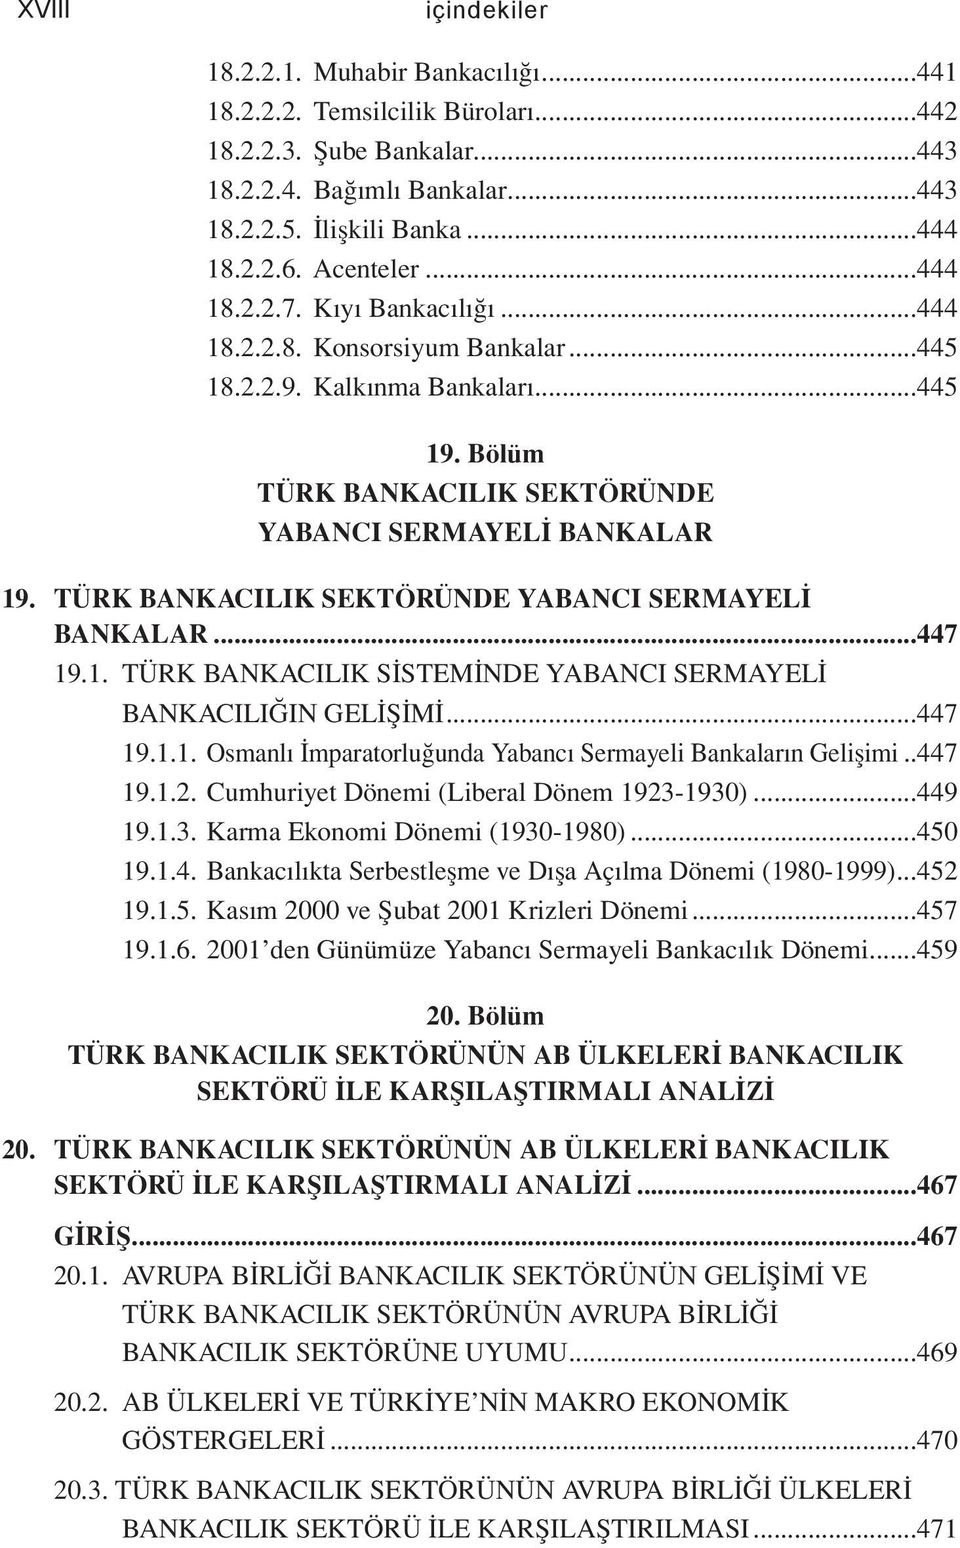 TÜRK BANKACILIK SEKTÖRÜNDE YABANCI SERMAYELİ BANKALAR...447 19.1. TÜRK BANKACILIK SİSTEMİNDE YABANCI SERMAYELİ BANKACILIĞIN GELİŞİMİ...447 19.1.1. Osmanlı İmparatorluğunda Yabancı Sermayeli Bankaların Gelişimi.